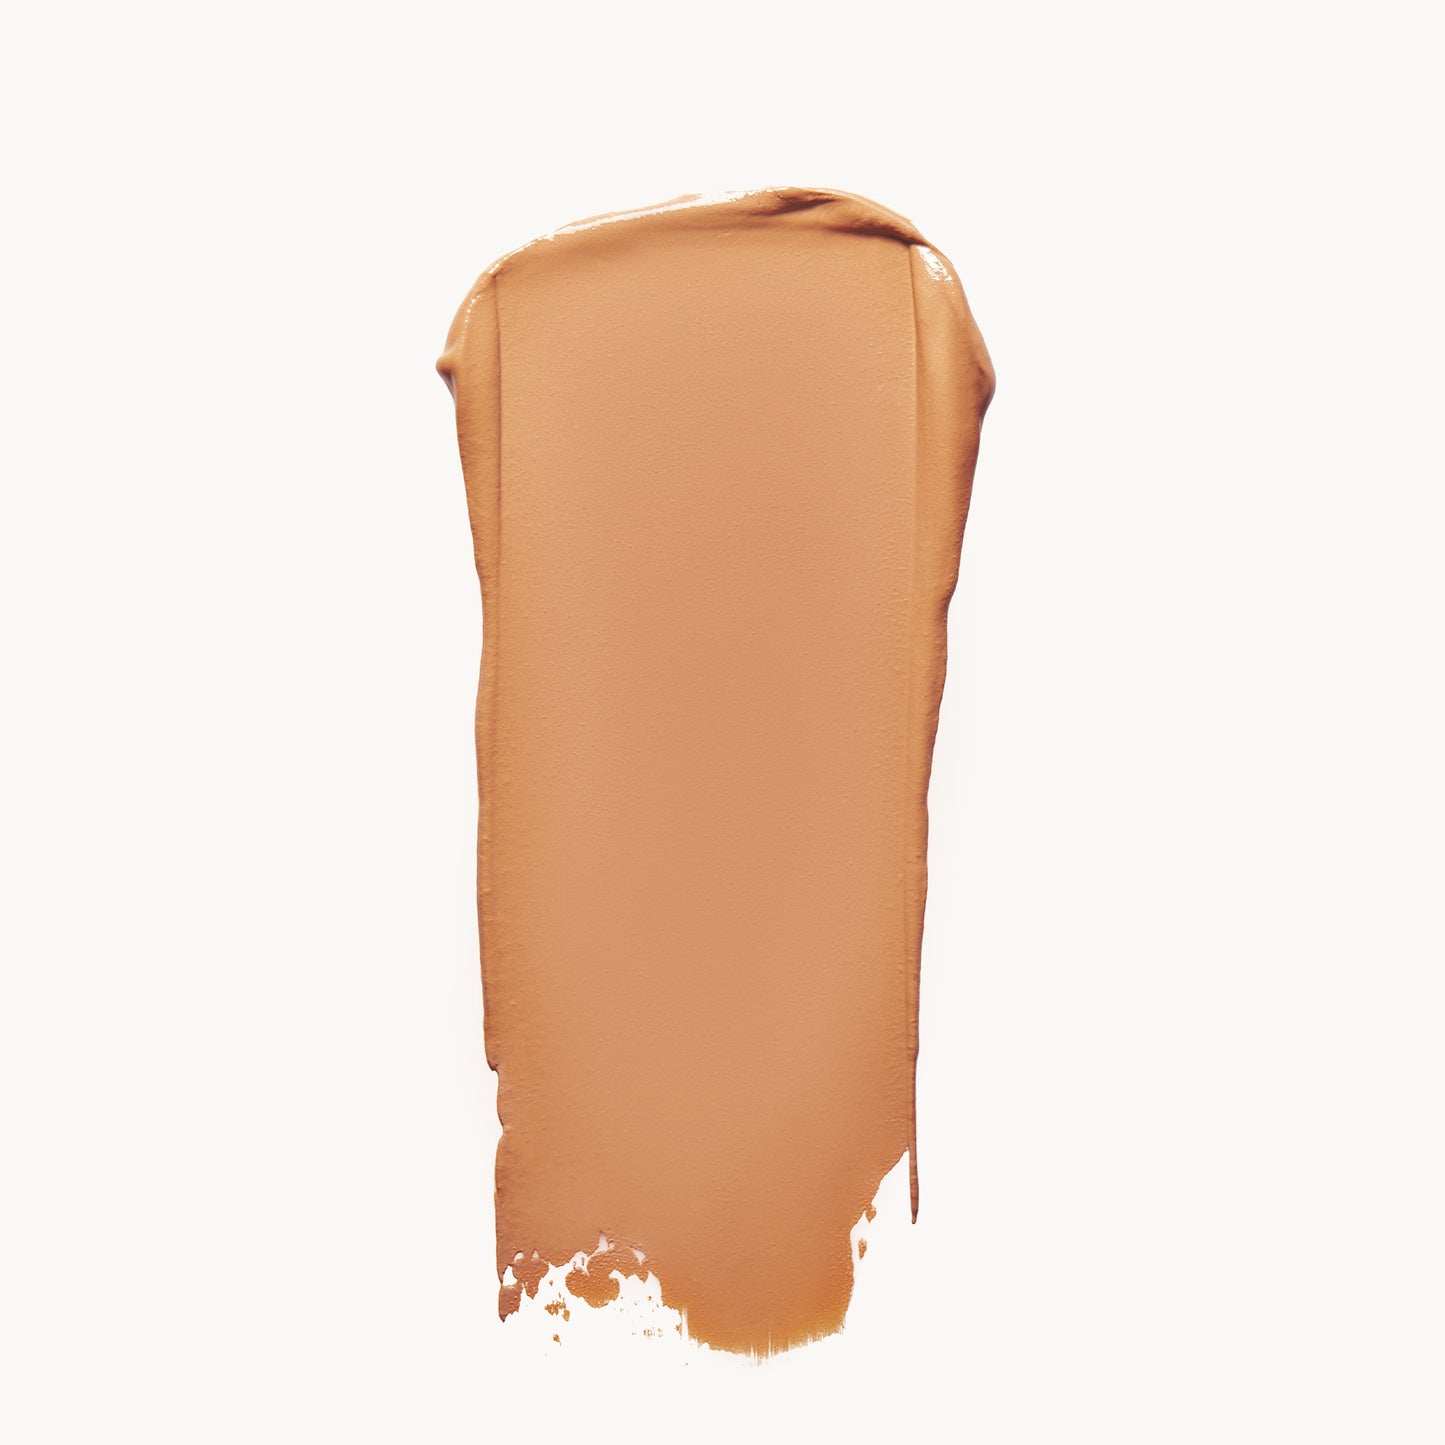 Kjaer Weis - Cream Bronzer Refill 3 g